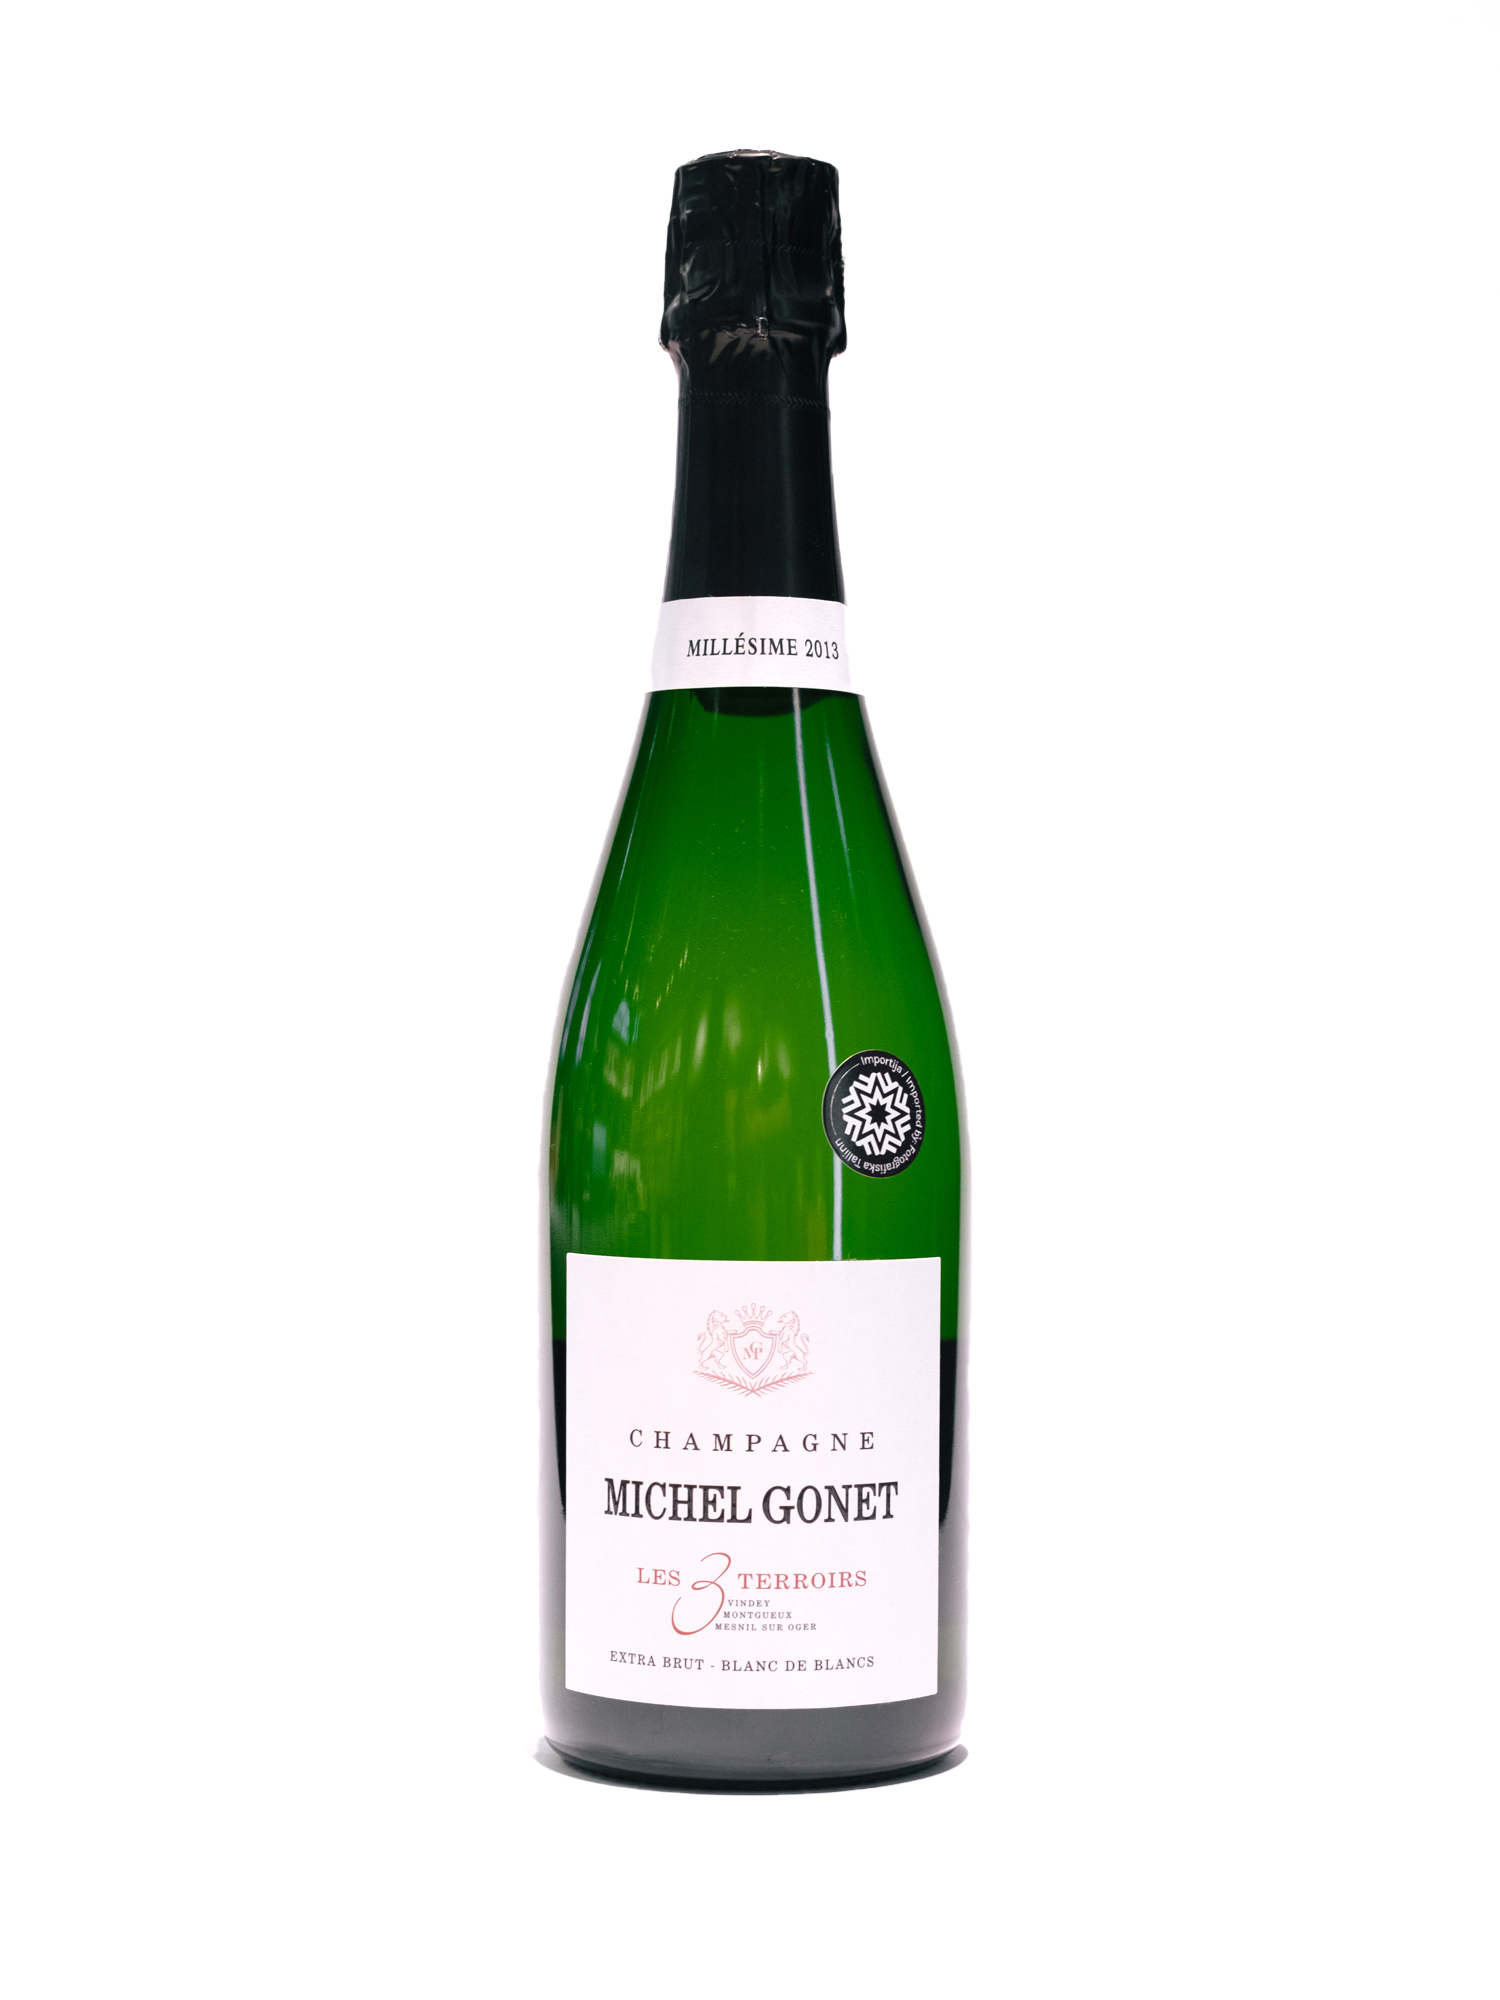 2013 3 Terroir Extra Brut Blanc de blancs Michel Gonet Champagne